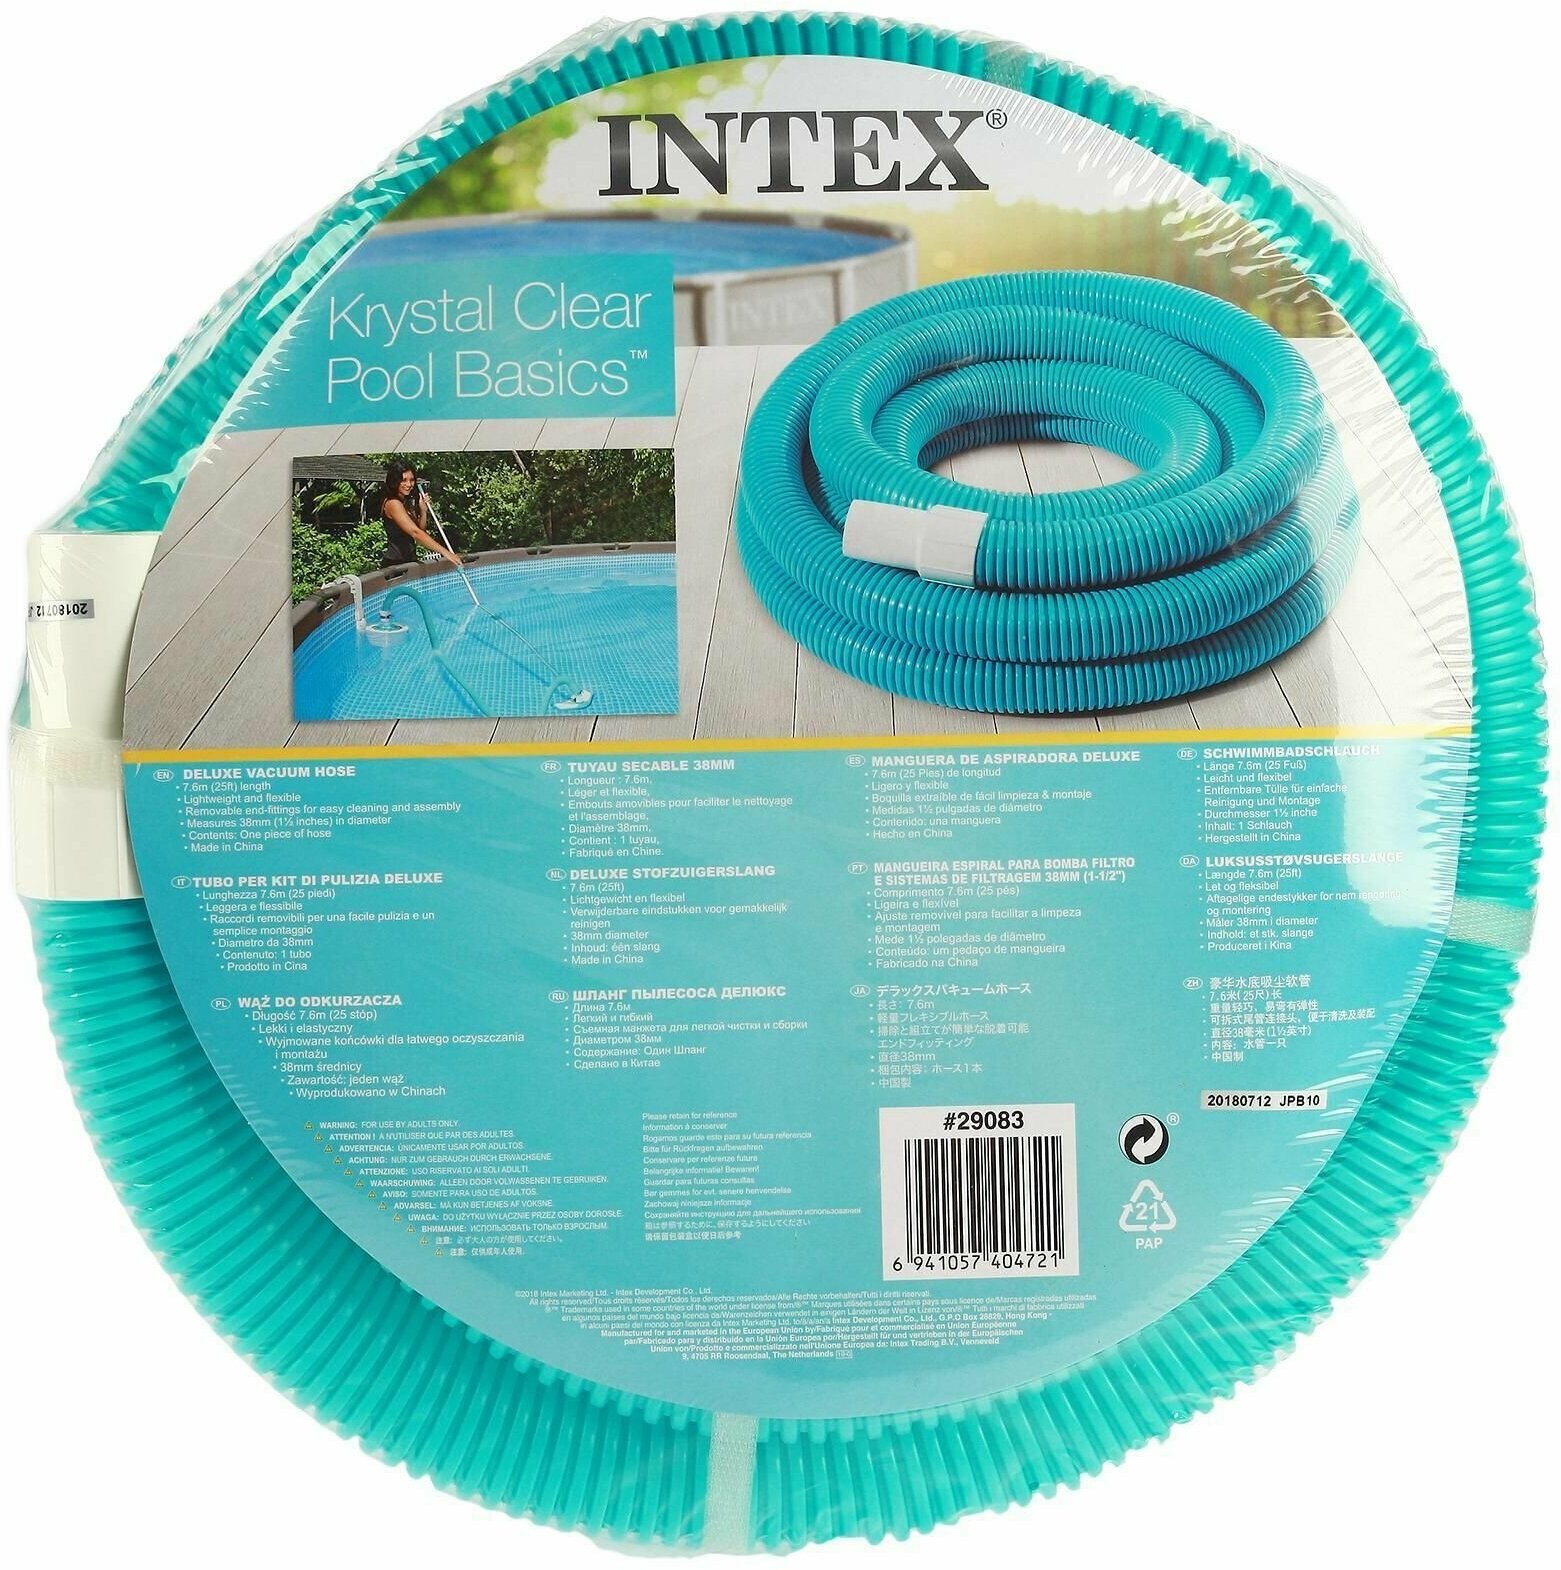 Шланг для бассейна Intex - фото №9